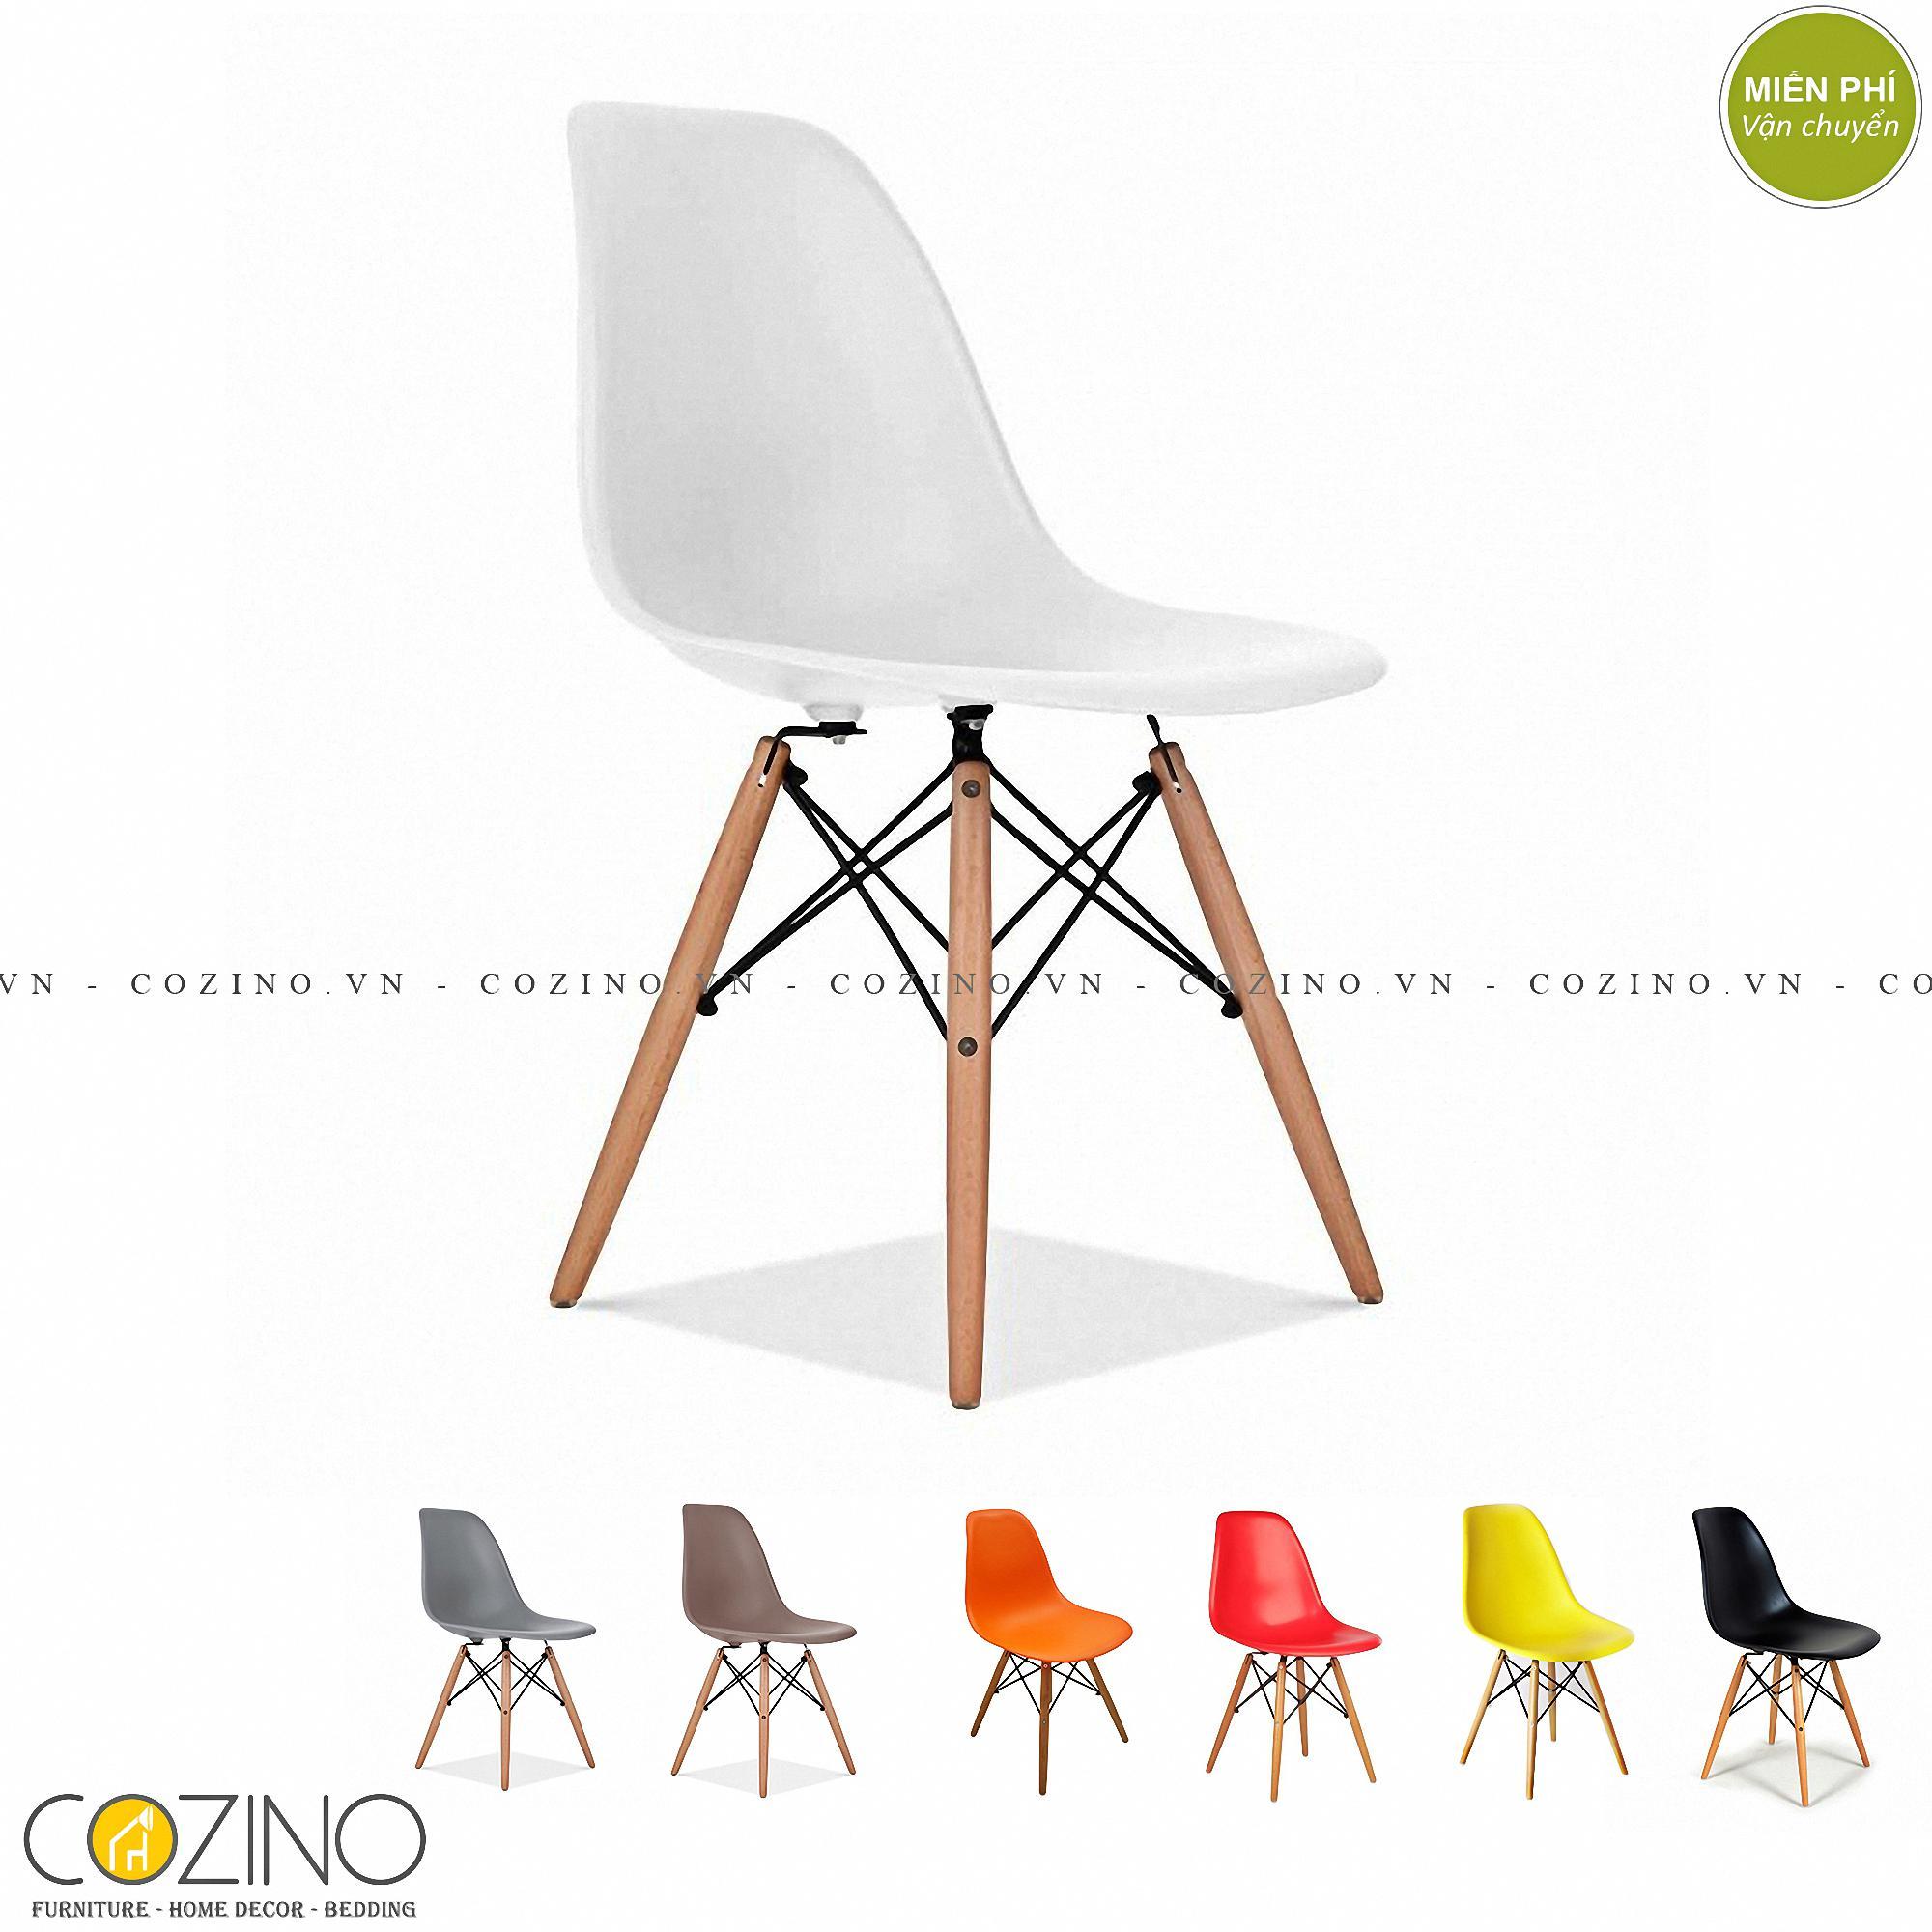 Ghế CZN-Eames trắng chân gỗ